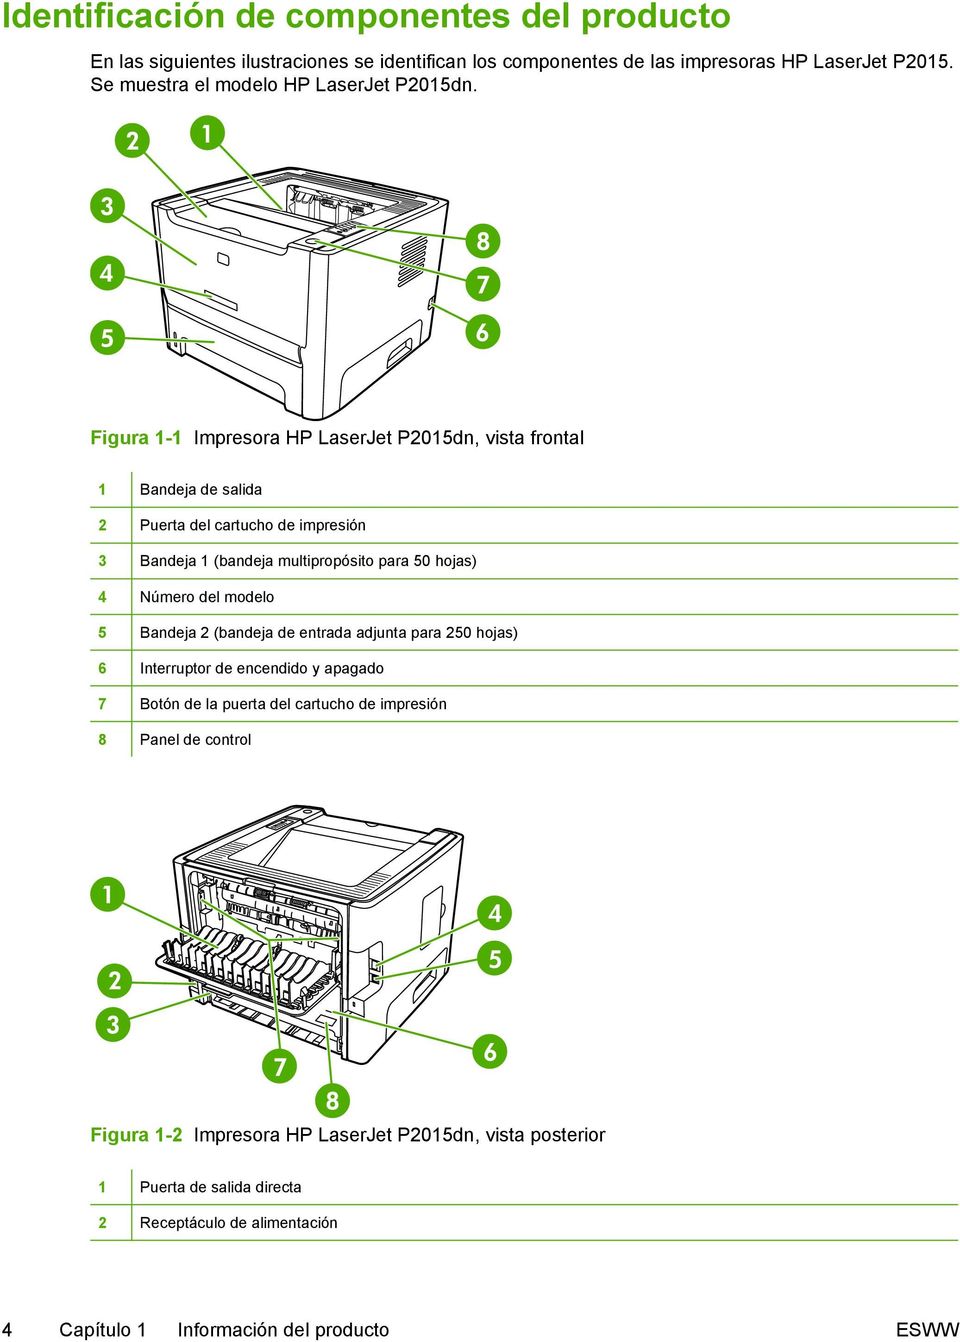 Figura 1-1 Impresora HP LaserJet P2015dn, vista frontal 1 Bandeja de salida 2 Puerta del cartucho de impresión 3 Bandeja 1 (bandeja multipropósito para 50 hojas) 4 Número